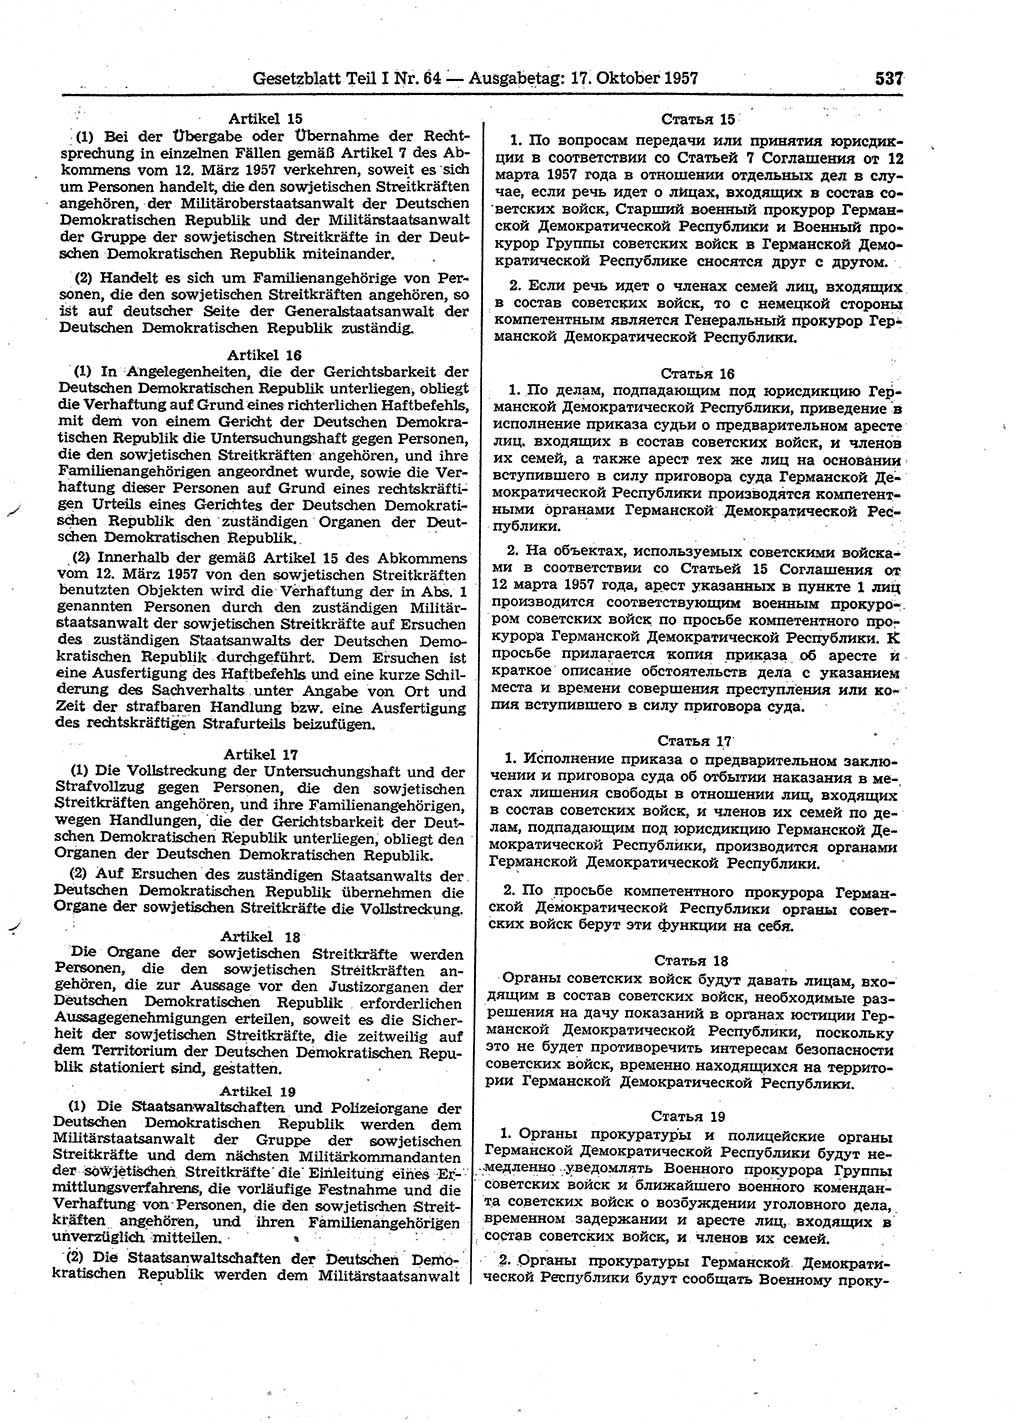 Gesetzblatt (GBl.) der Deutschen Demokratischen Republik (DDR) Teil Ⅰ 1957, Seite 537 (GBl. DDR Ⅰ 1957, S. 537)